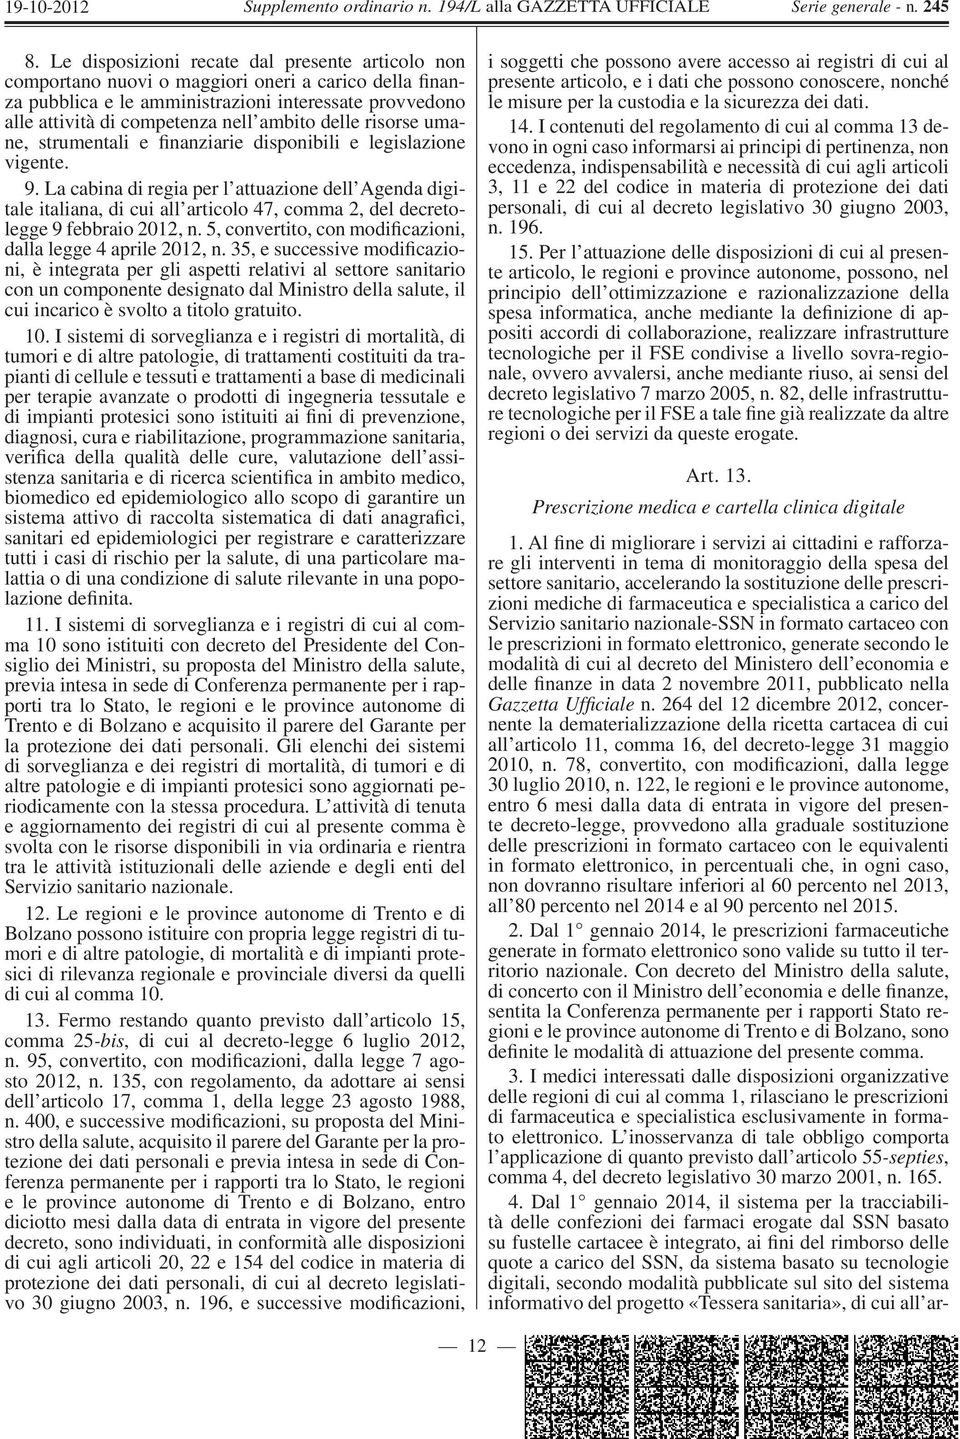 La cabina di regia per l attuazione dell Agenda digitale italiana, di cui all articolo 47, comma 2, del decretolegge 9 febbraio 2012, n. 5, convertito, con modificazioni, dalla legge 4 aprile 2012, n.